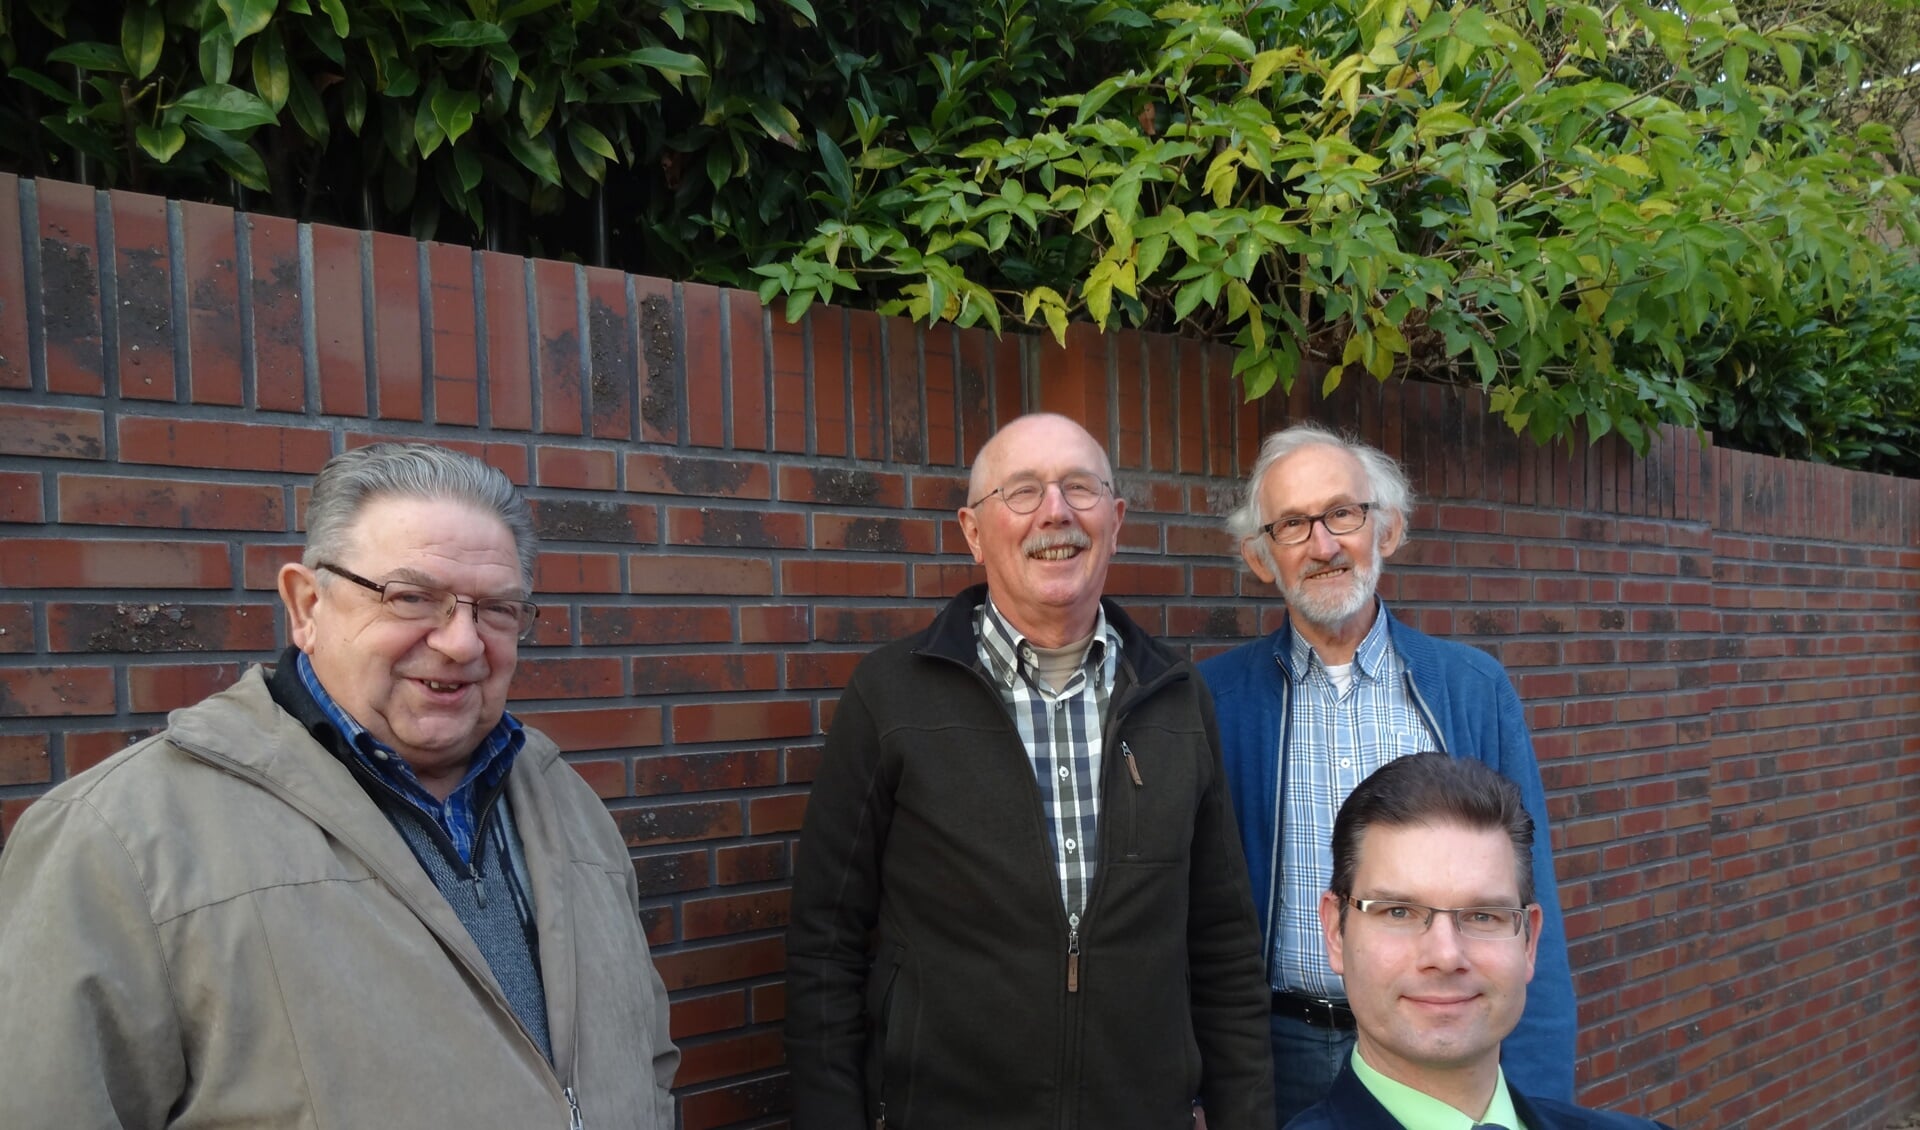 V.l.n.r: Marius Wijdeven, Biek van Beek en Sjef van Esch,. zittend dirigent Marcus de Haard. (foto: Ankh van Burk)